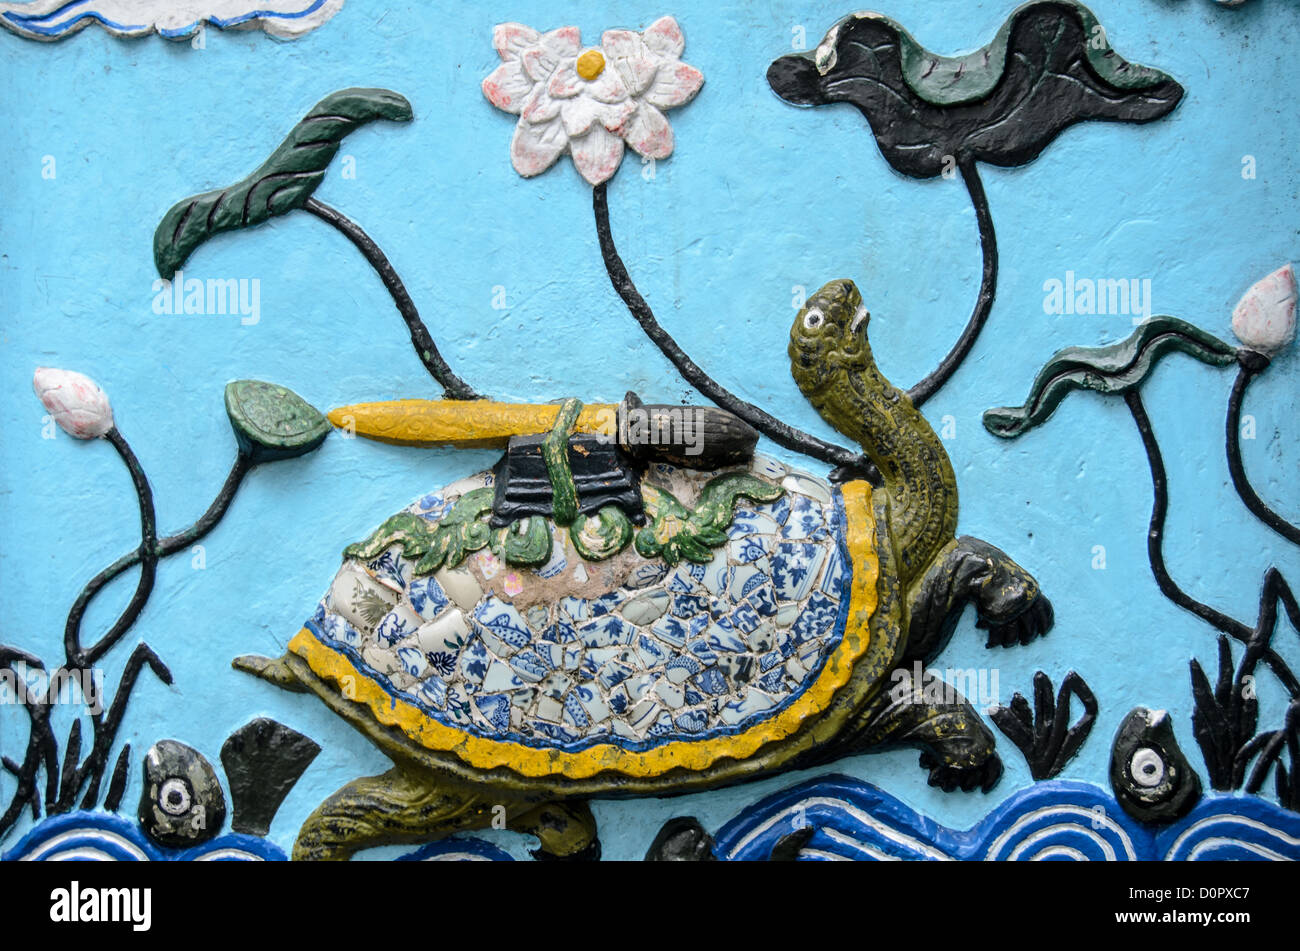 HANOI, Vietnam - Turtle arte presso il Tempio della montagna di giada (Ngoc Son Temple) sul Lago Hoan Kiem nel cuore della città vecchia di Hanoi e. Il tempio fu stabilito sulla piccola isola di giada in prossimità della sponda settentrionale del lago nel XVIII secolo ed è in onore del 13 secolo leader militare Tran Hung Dao. L'illustrazione raffigura la leggenda della tartaruga che per primo ha dato e poi presero indietro una spada spirituale utilizzato per sconfiggere gli invasori cinesi. Foto Stock